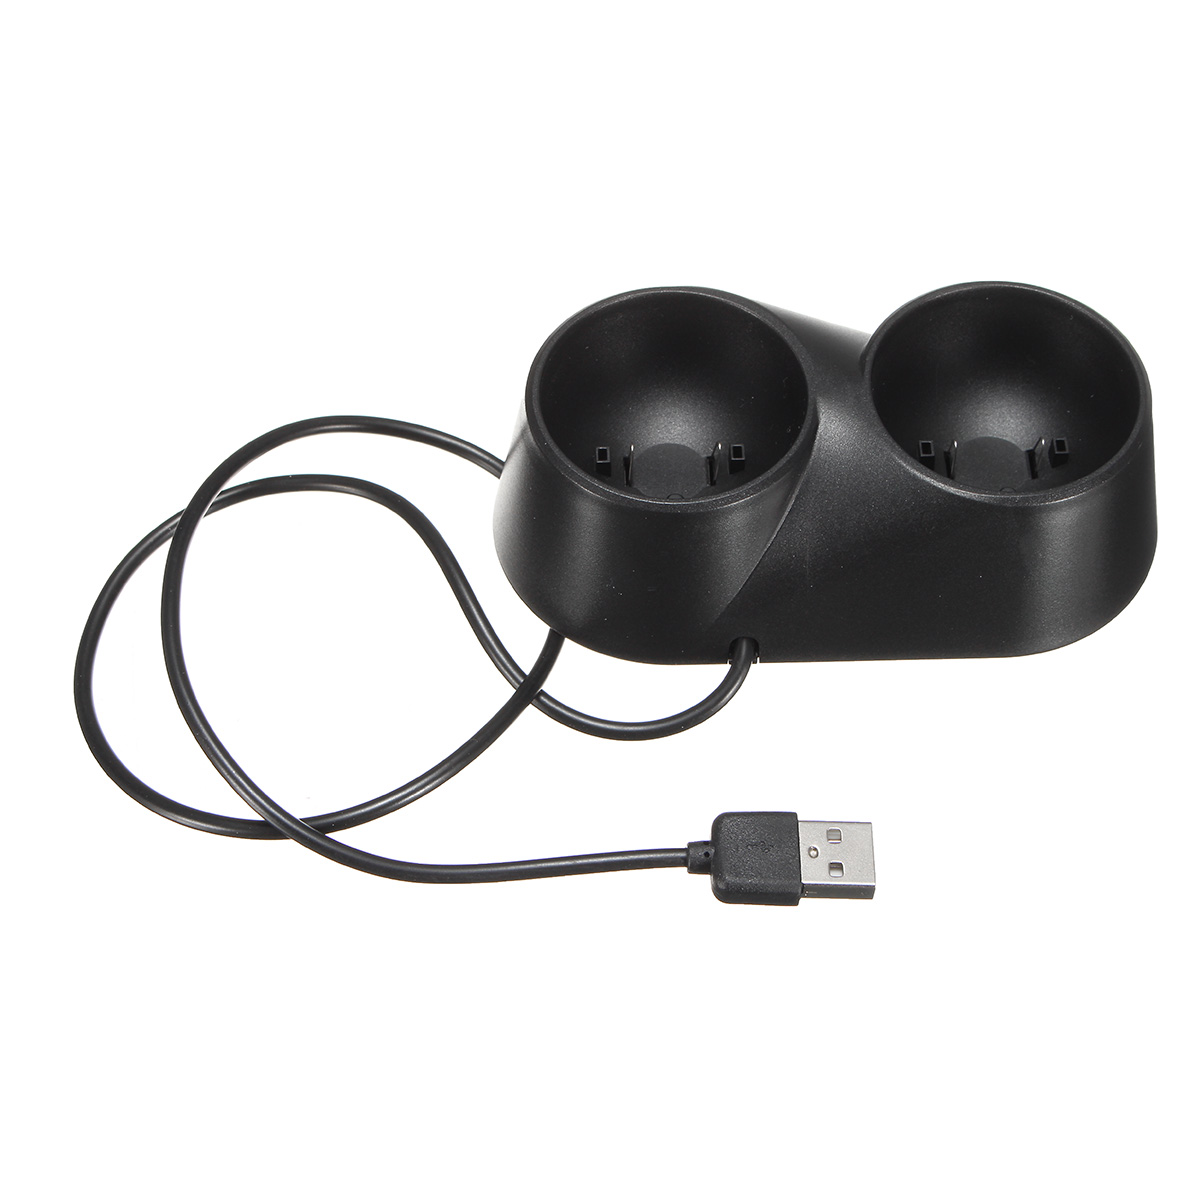 

USB двойной контроллер зарядное устройство док-станция подставка для Sony PS4 PS Move VR PSVR